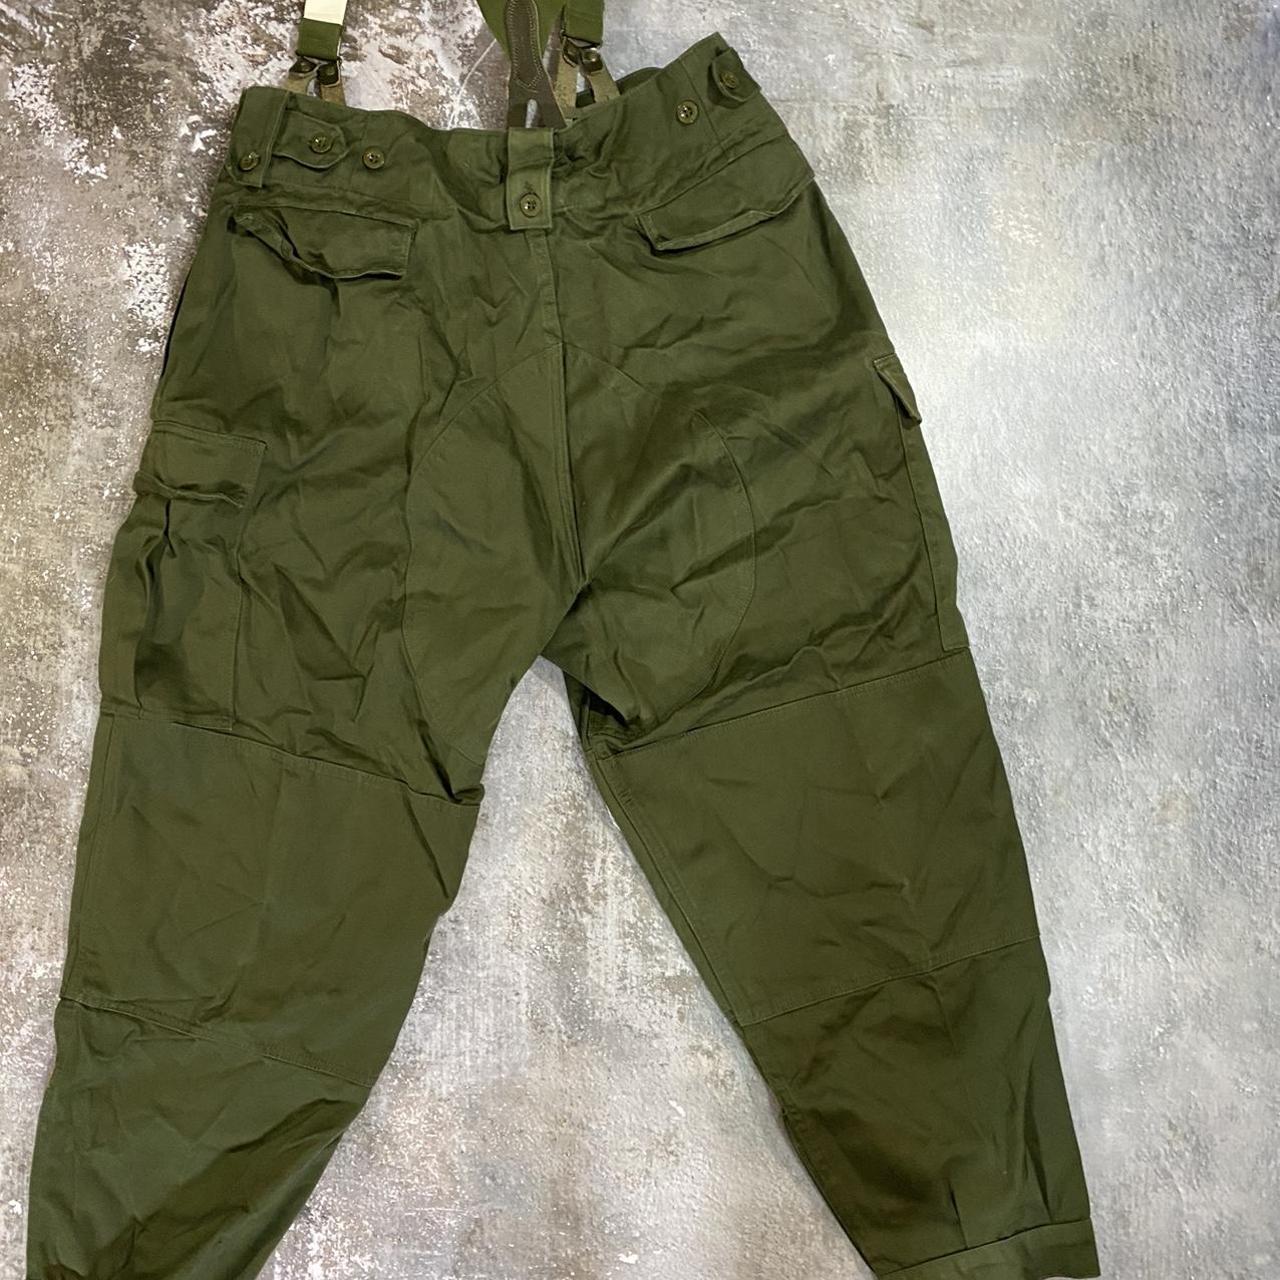 Vintage 70s Military Parachute pants! These pants... - Depop